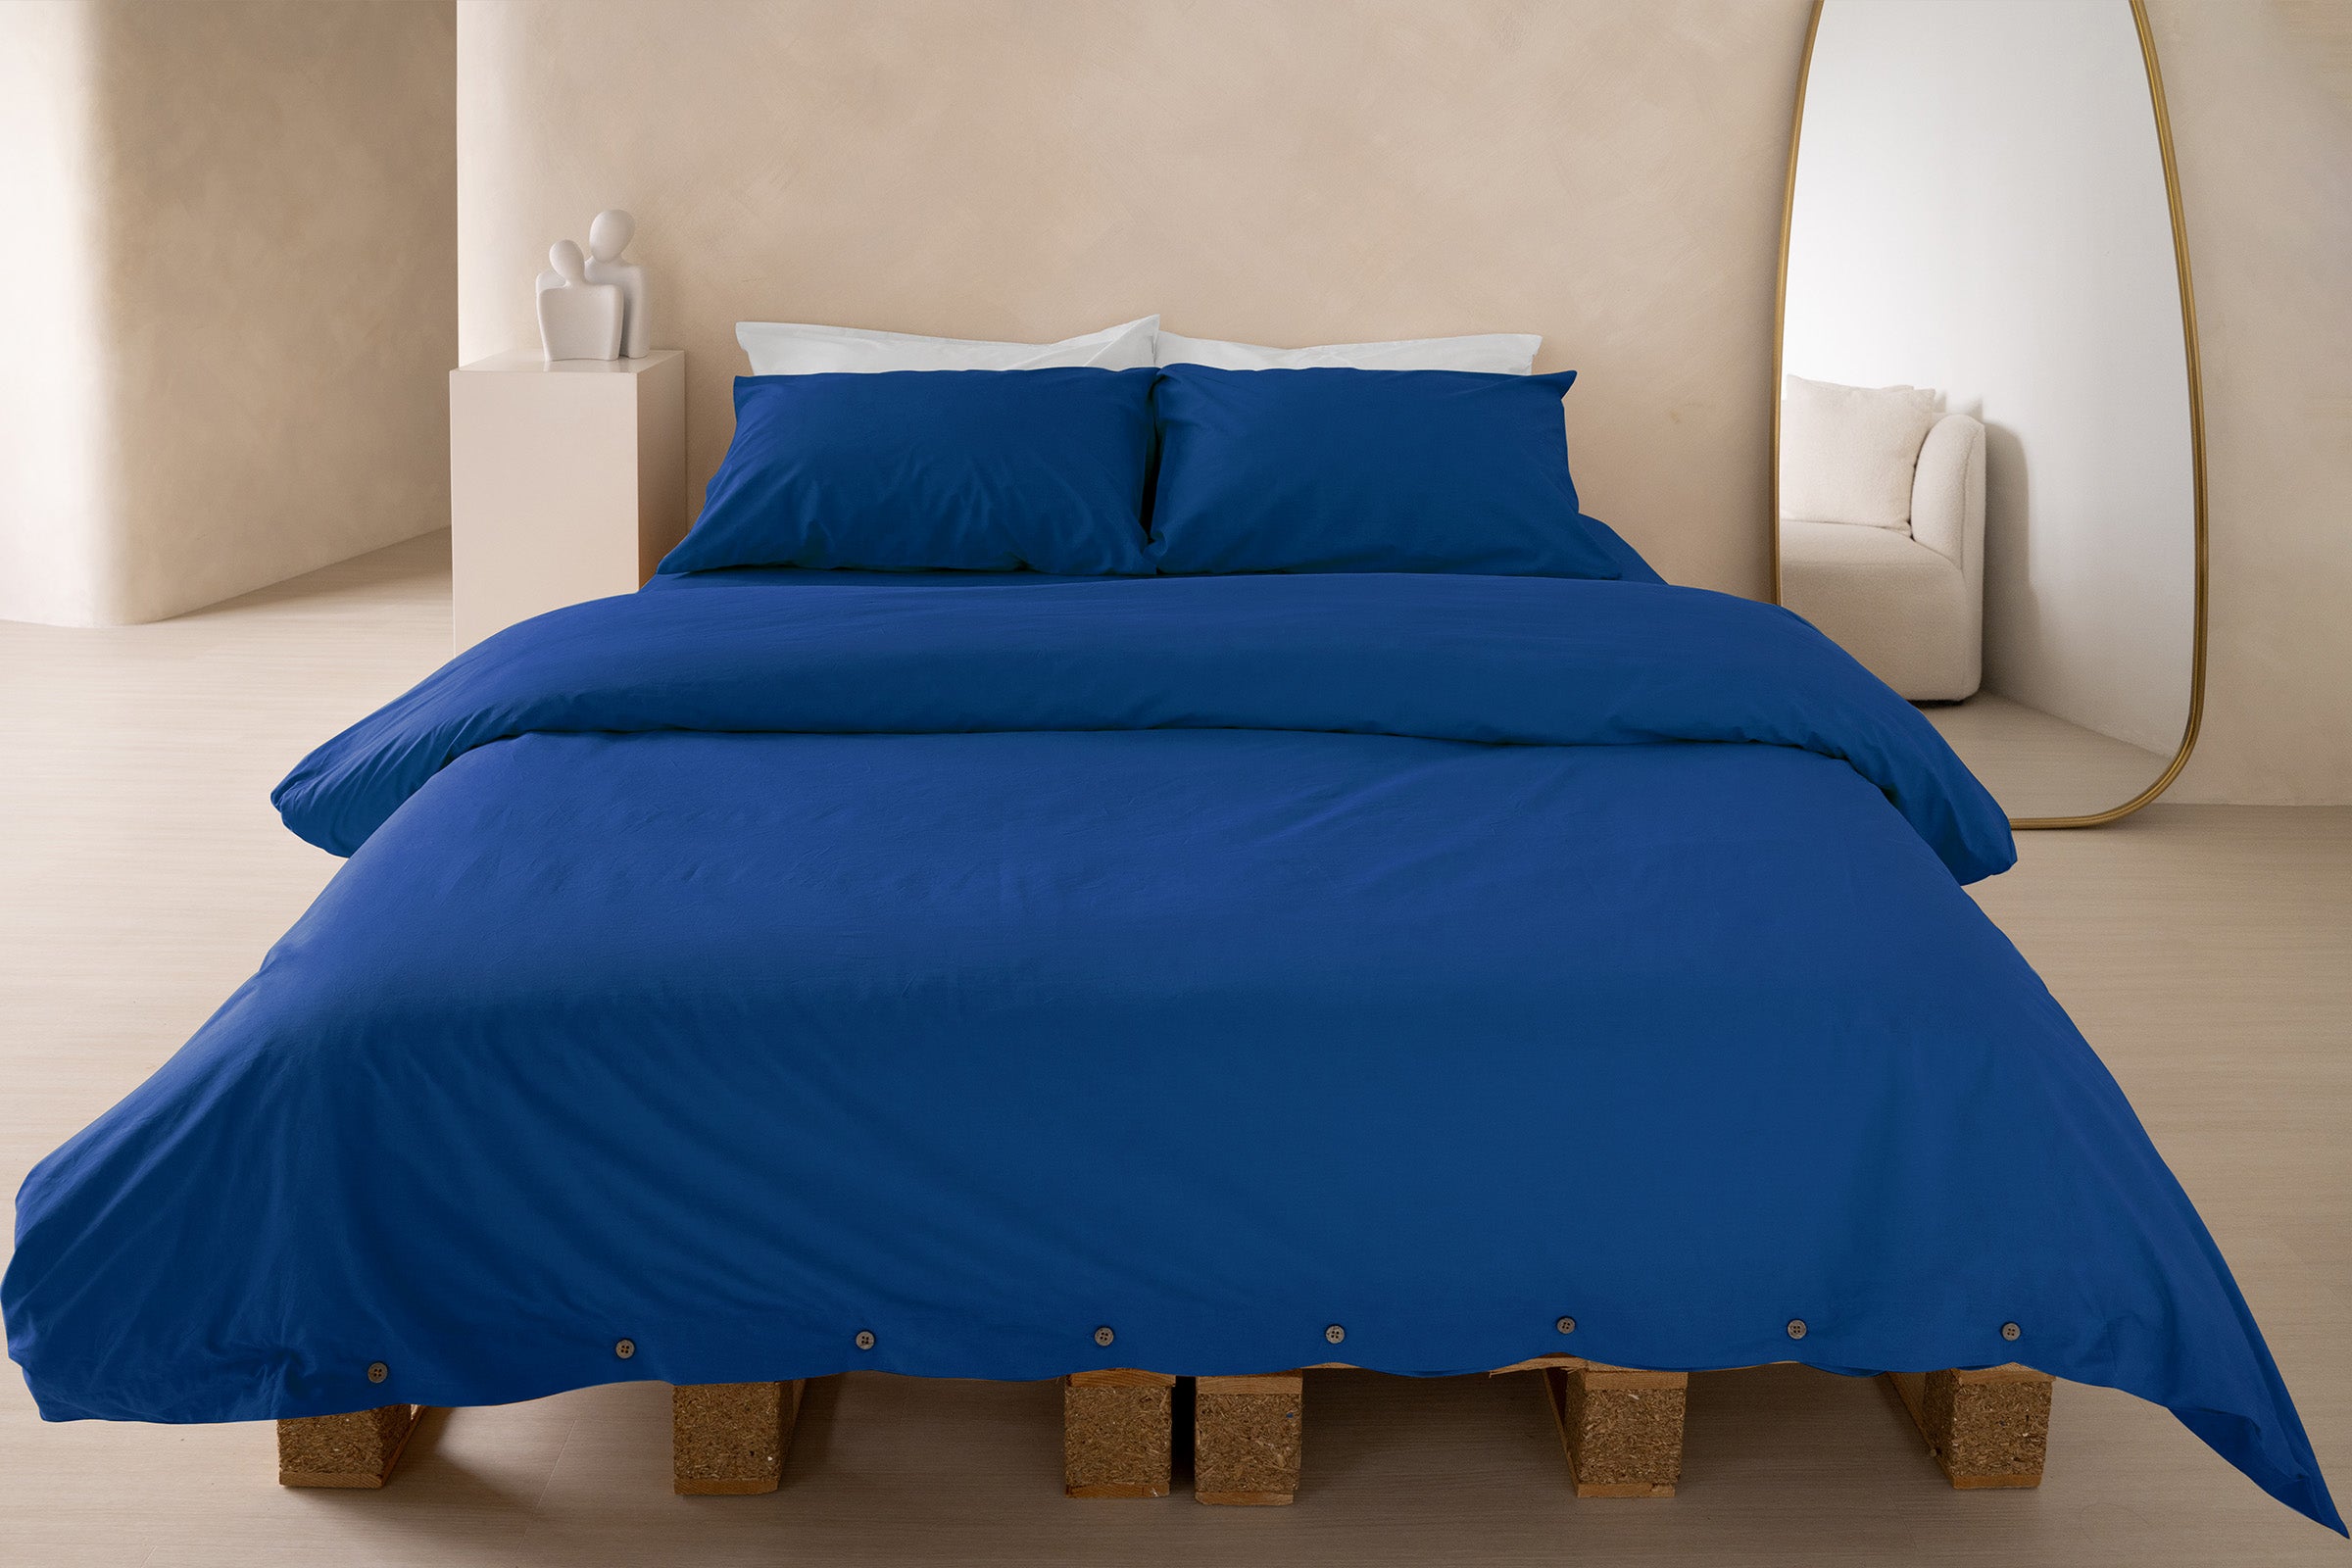 crisp-cobalt-duvet-cover-fitted-sheet-pillowcase-pair-white-pillowcase-pair-by-sojao.jpg